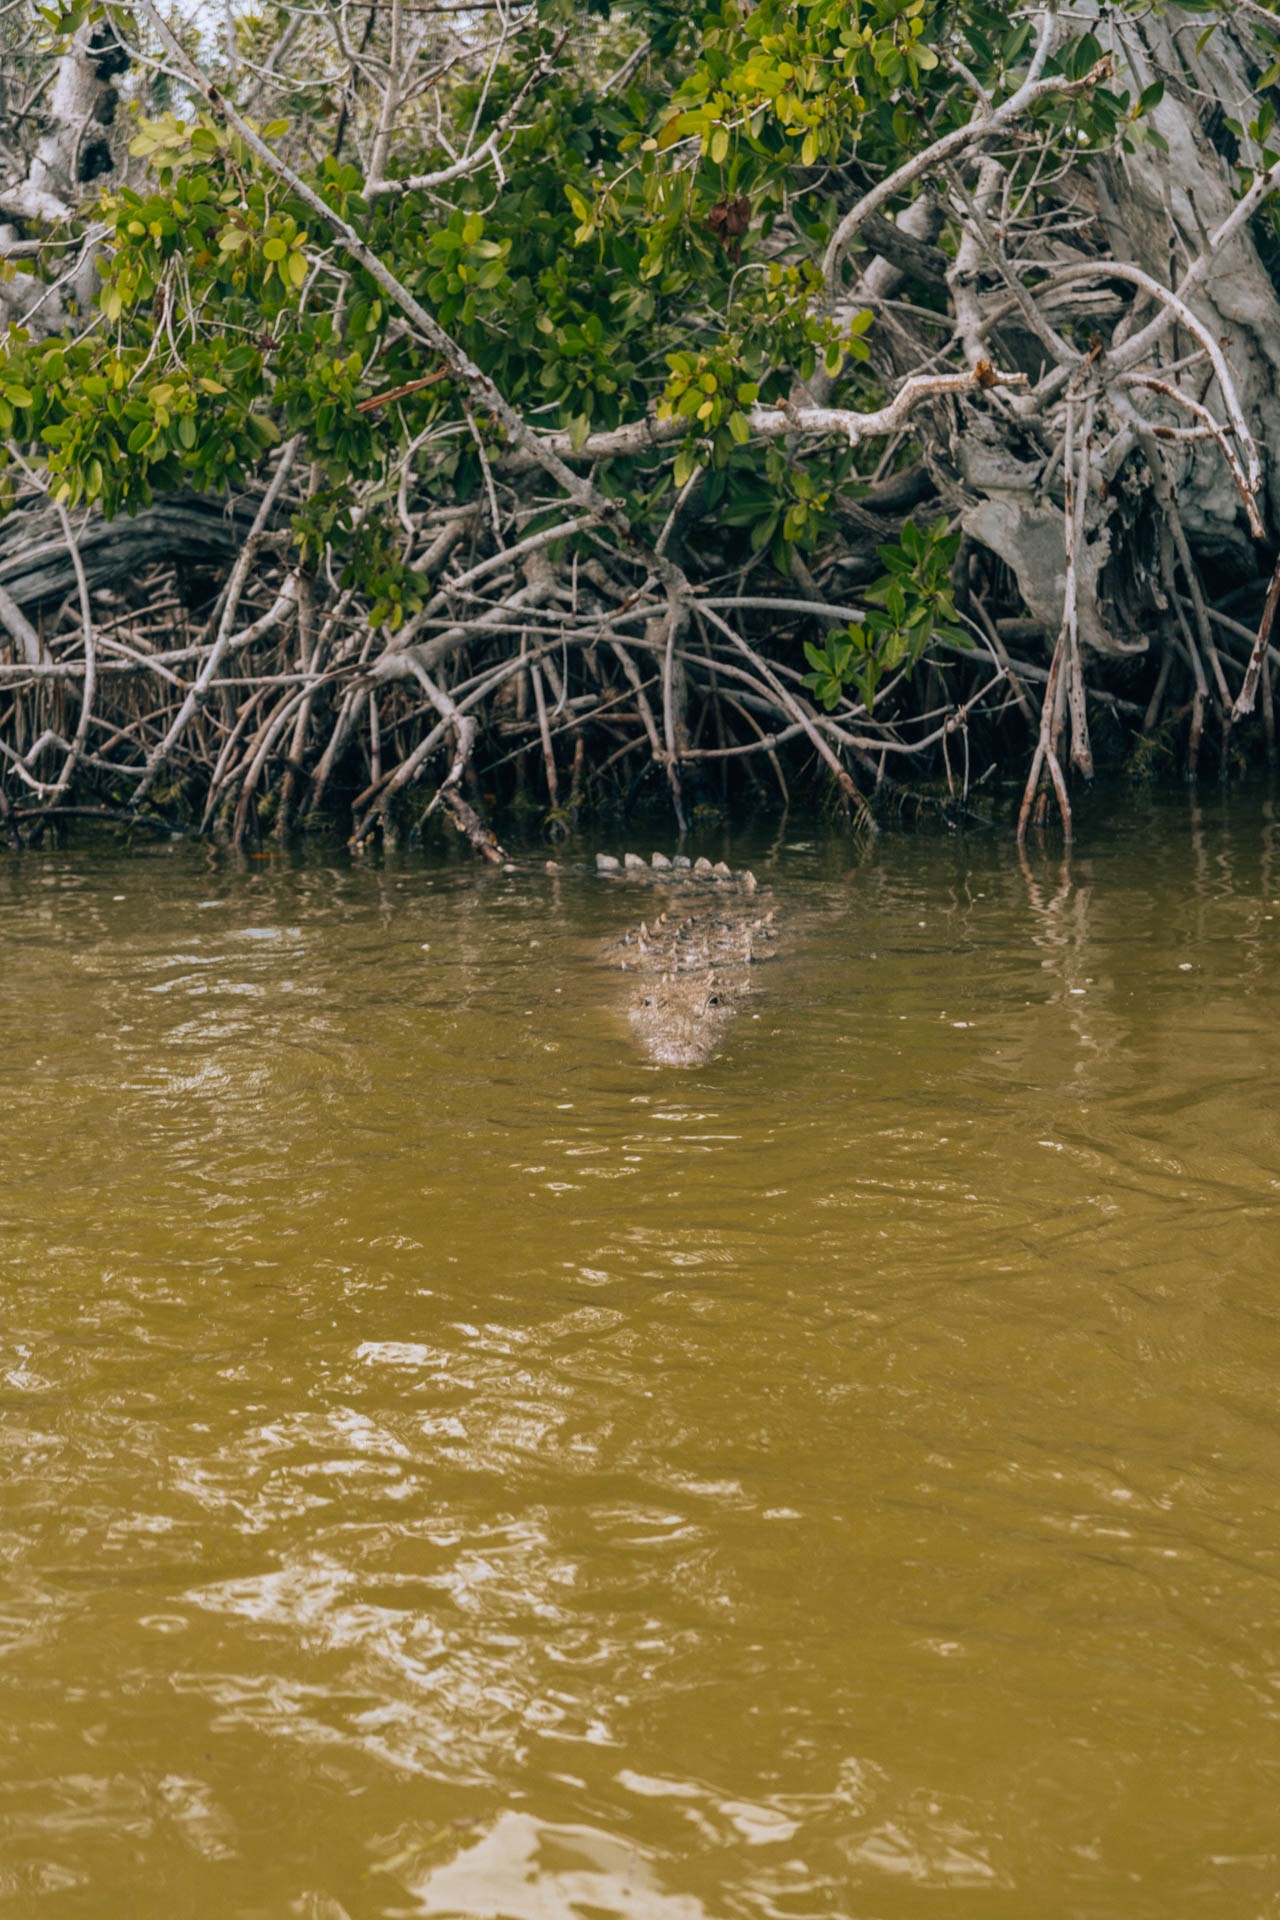 Krokodyl w rezerwacie przyrody Rio Lagartos koło Valladolid